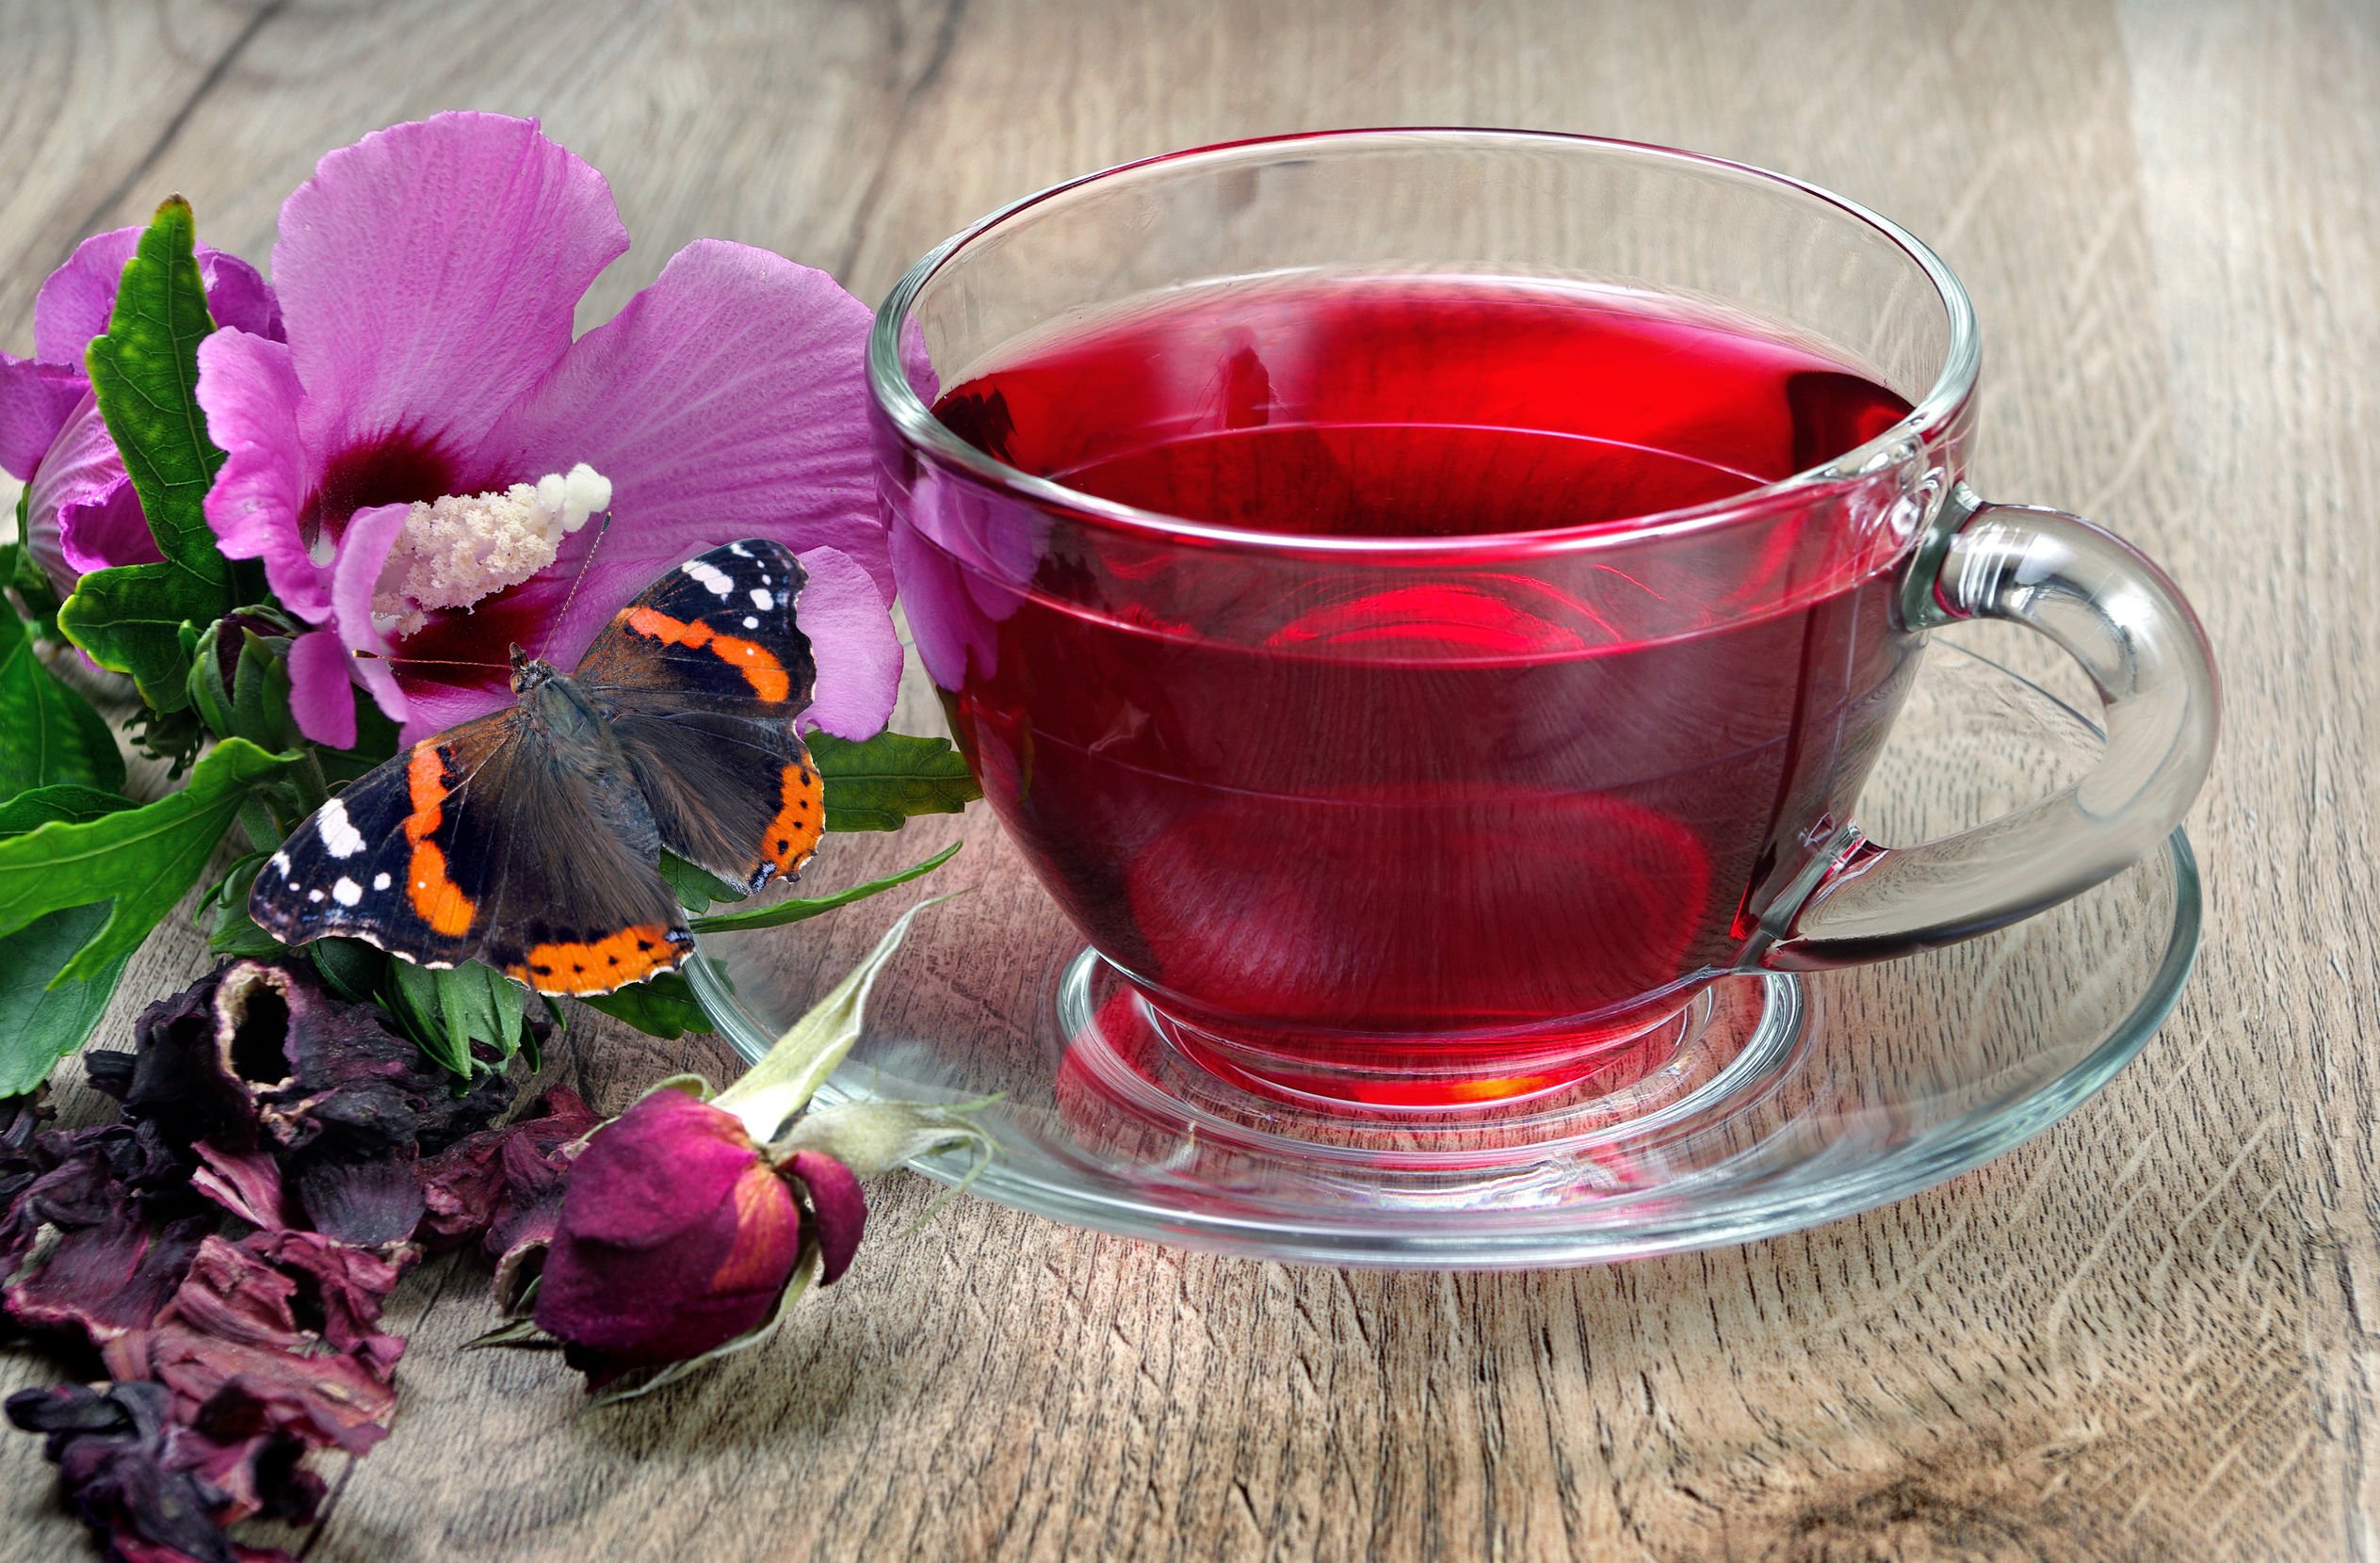 Ceaiul ce reduce colesterolul, bun pentru slăbit. Scade tensiunea arterială și are proprietăți anti-cancer, anti-bacteriene